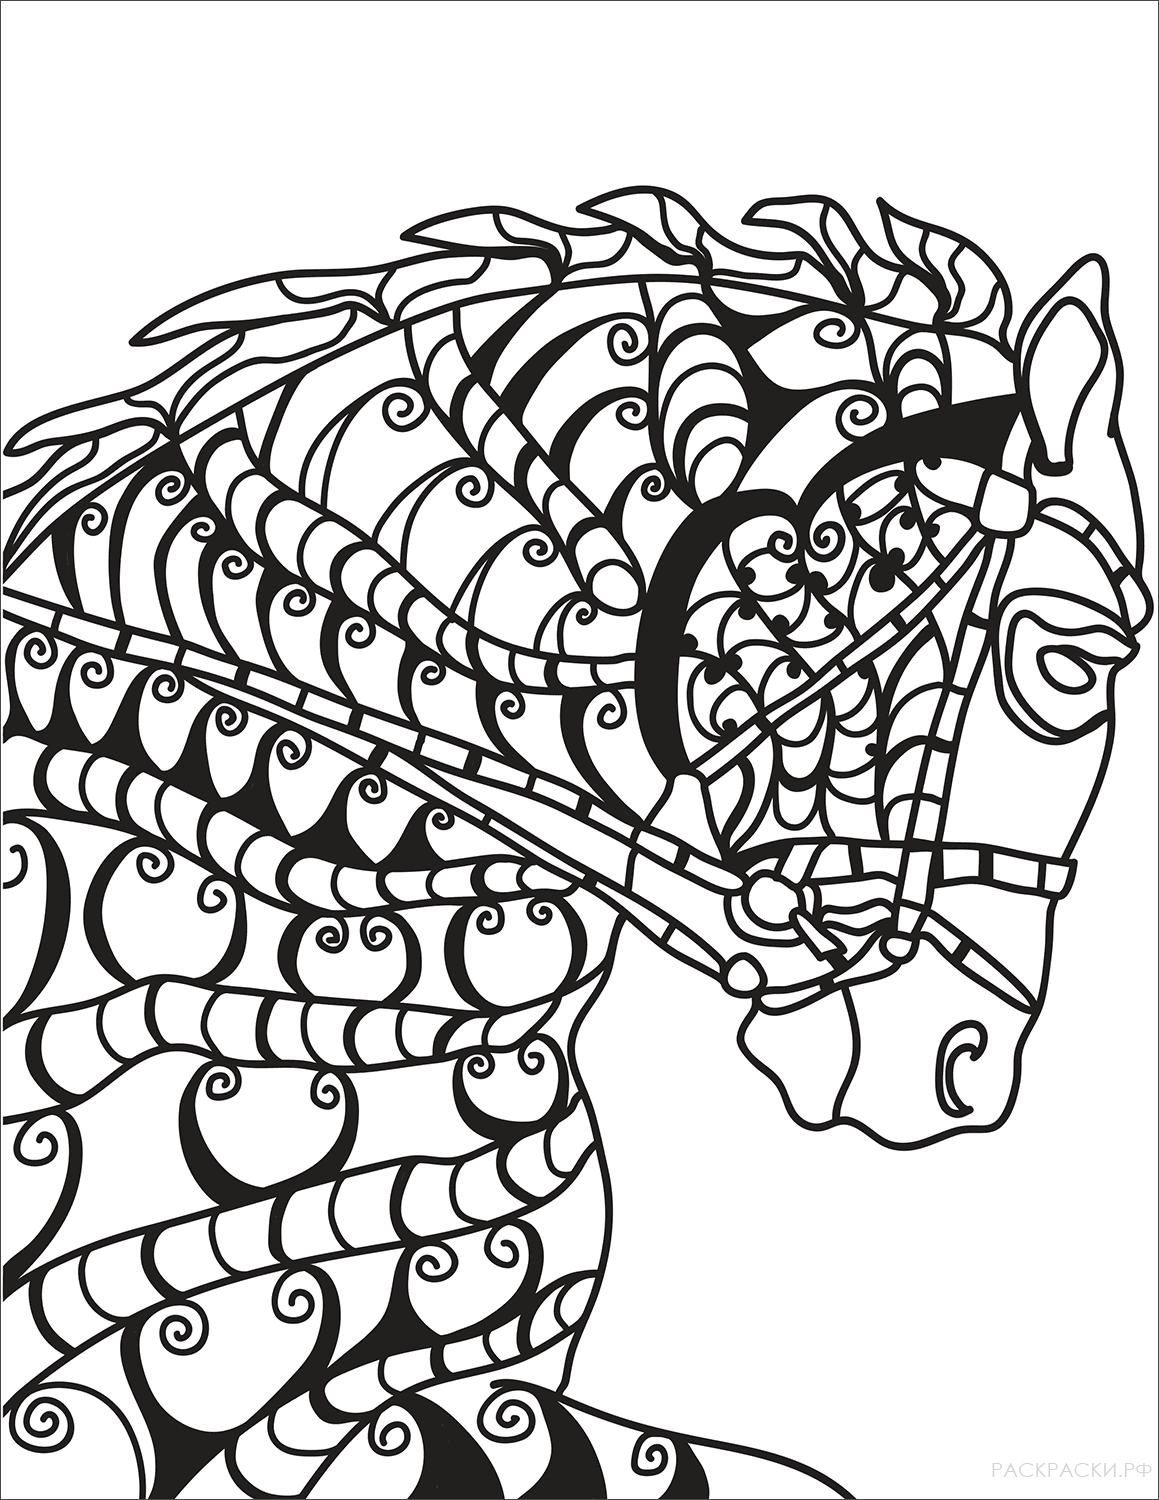 Раскраска Голова лошади в технике дзентангл 2